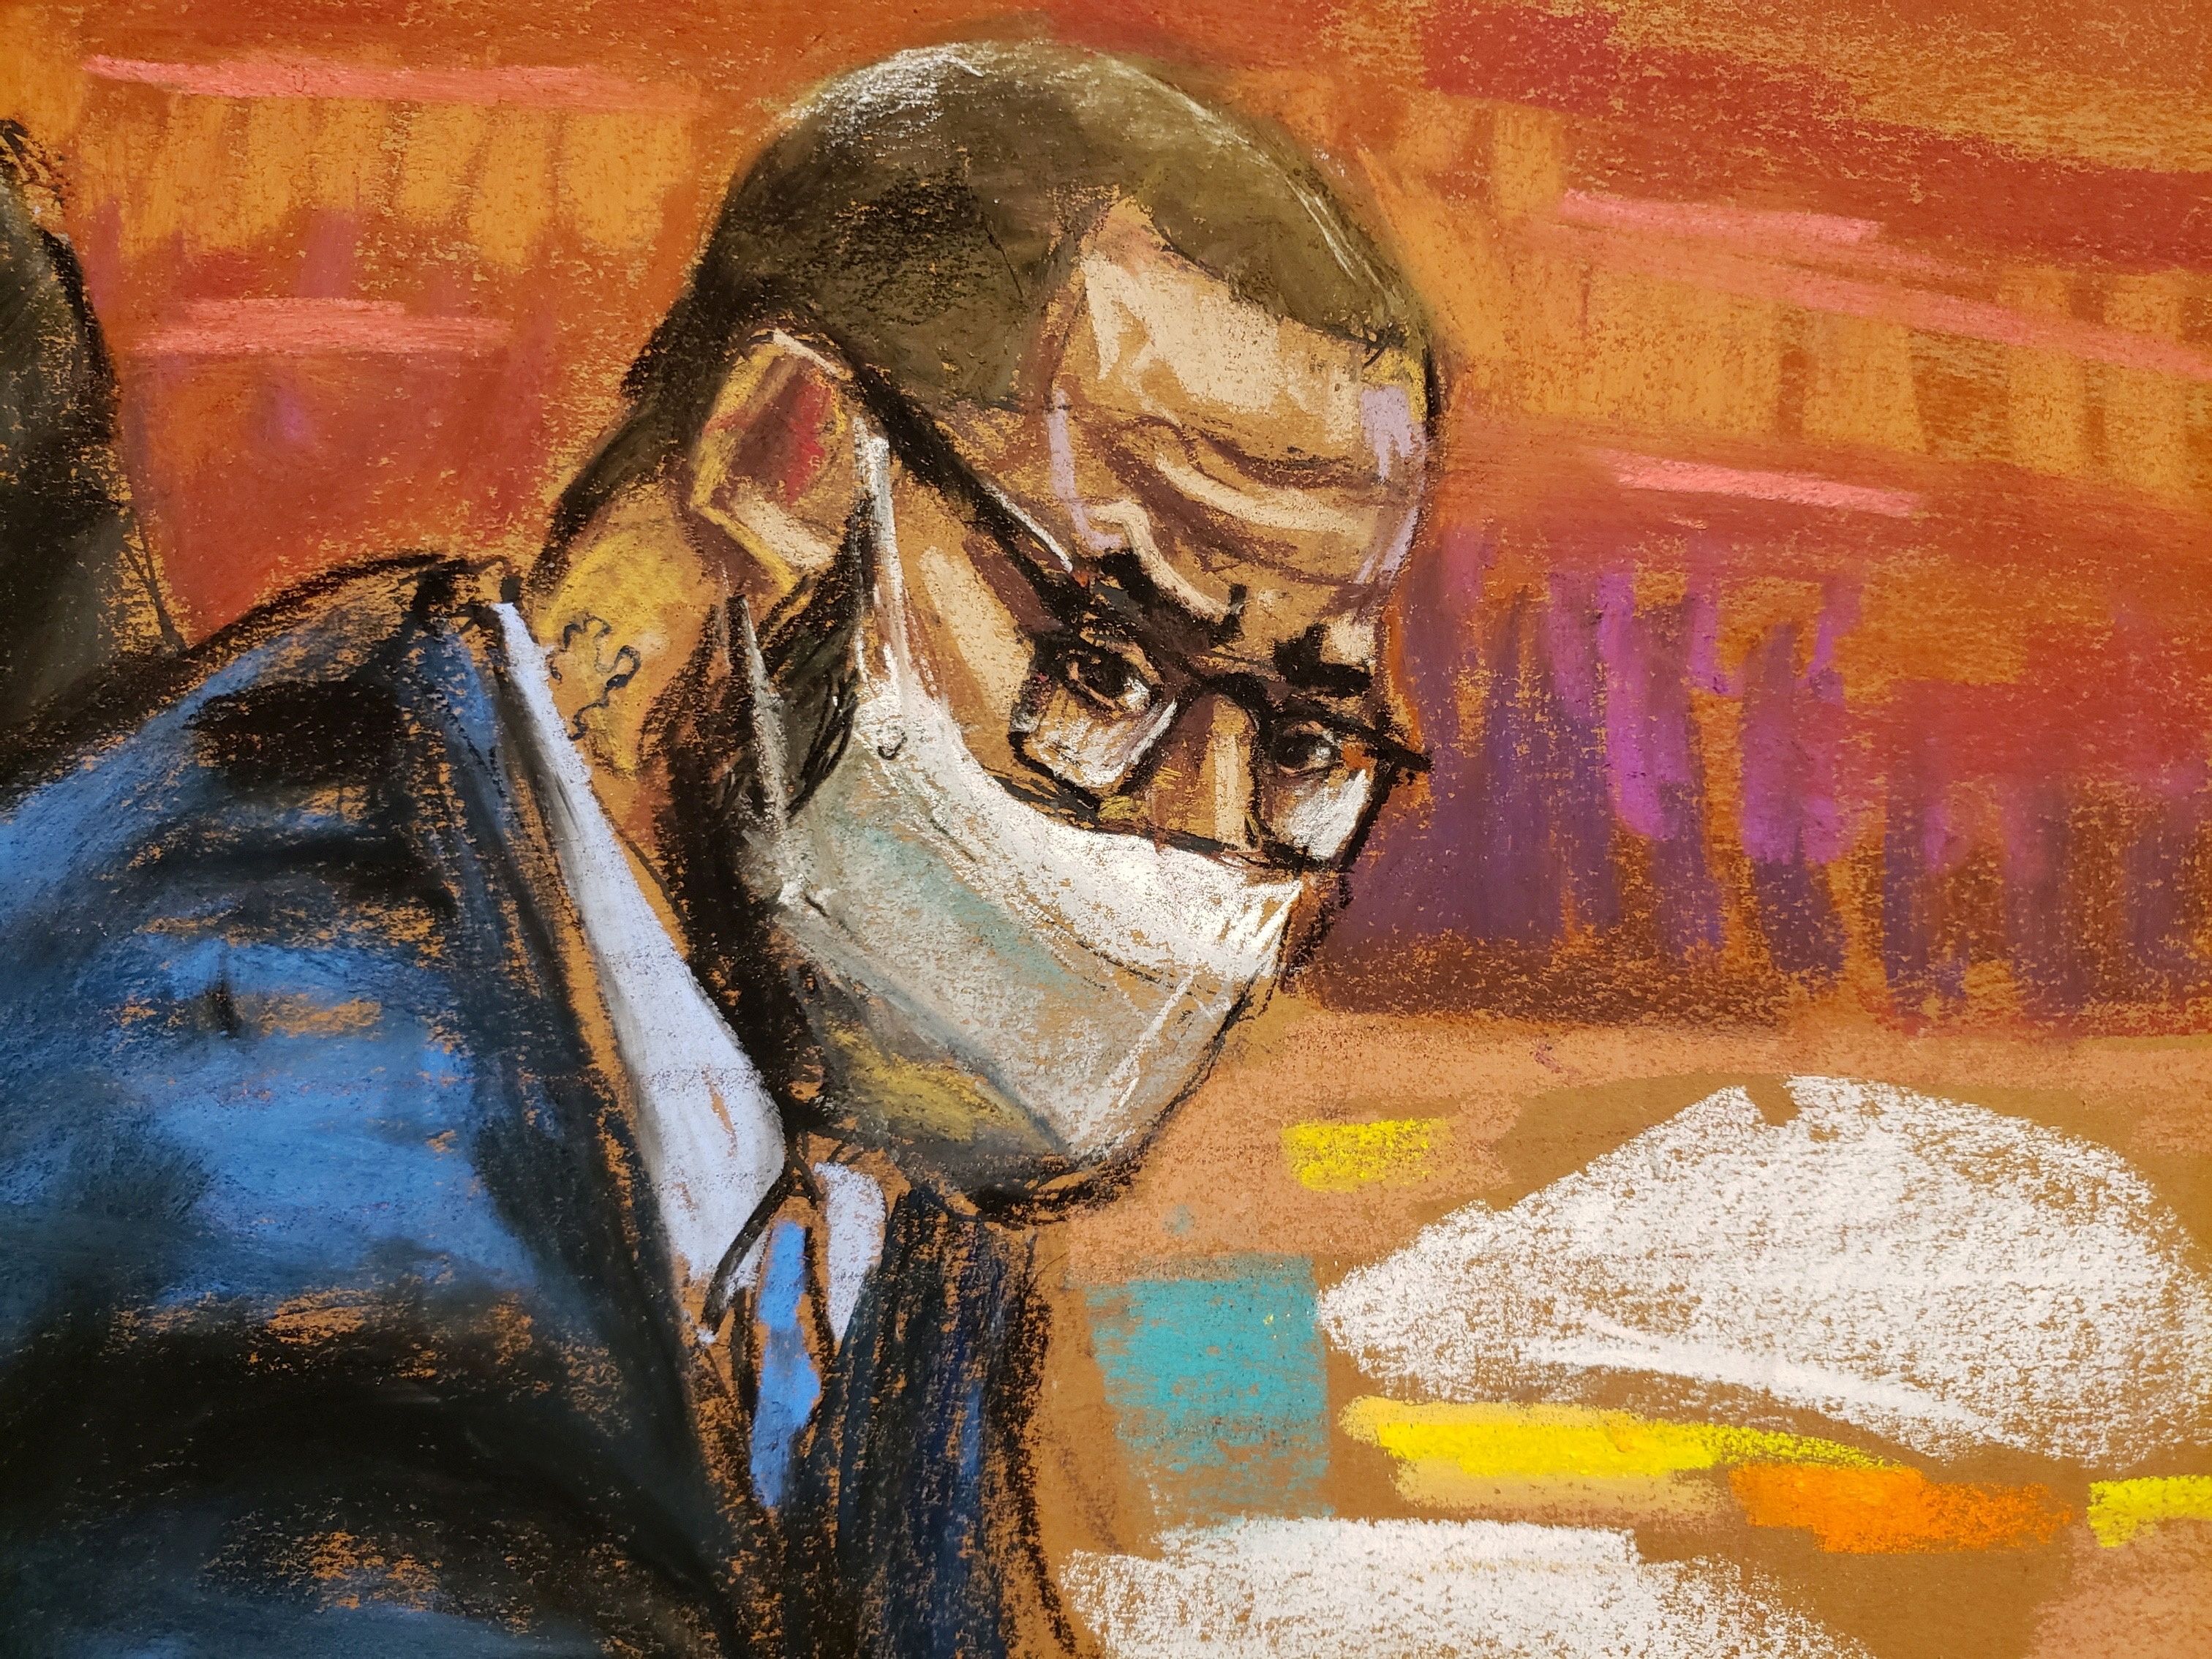 R. Kelly trial continues in Brooklyn